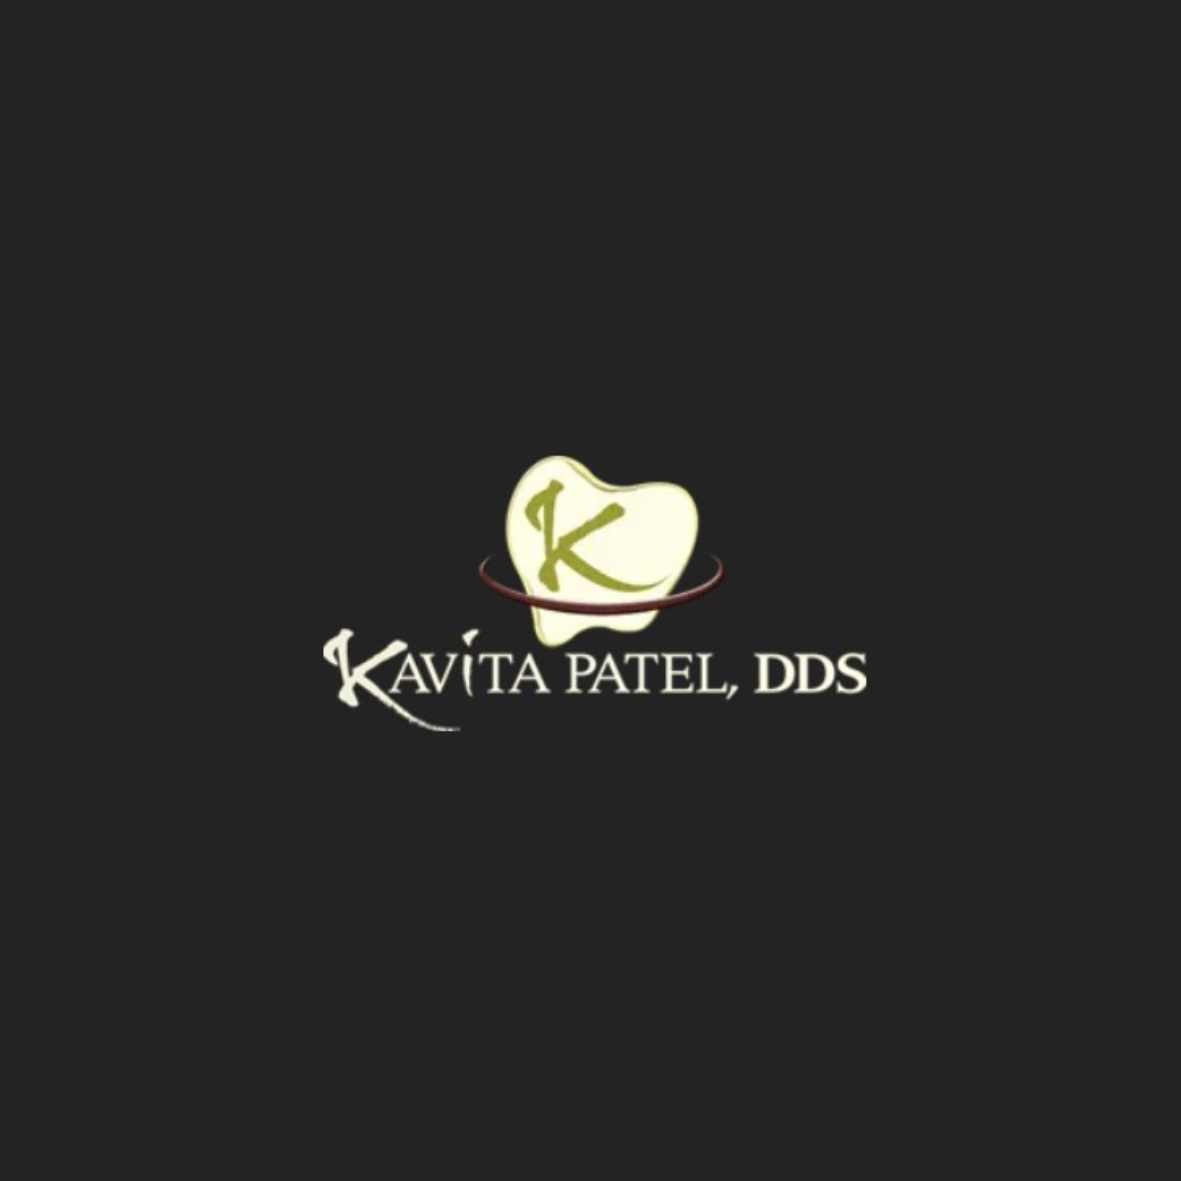 Kavita Patel, DDS